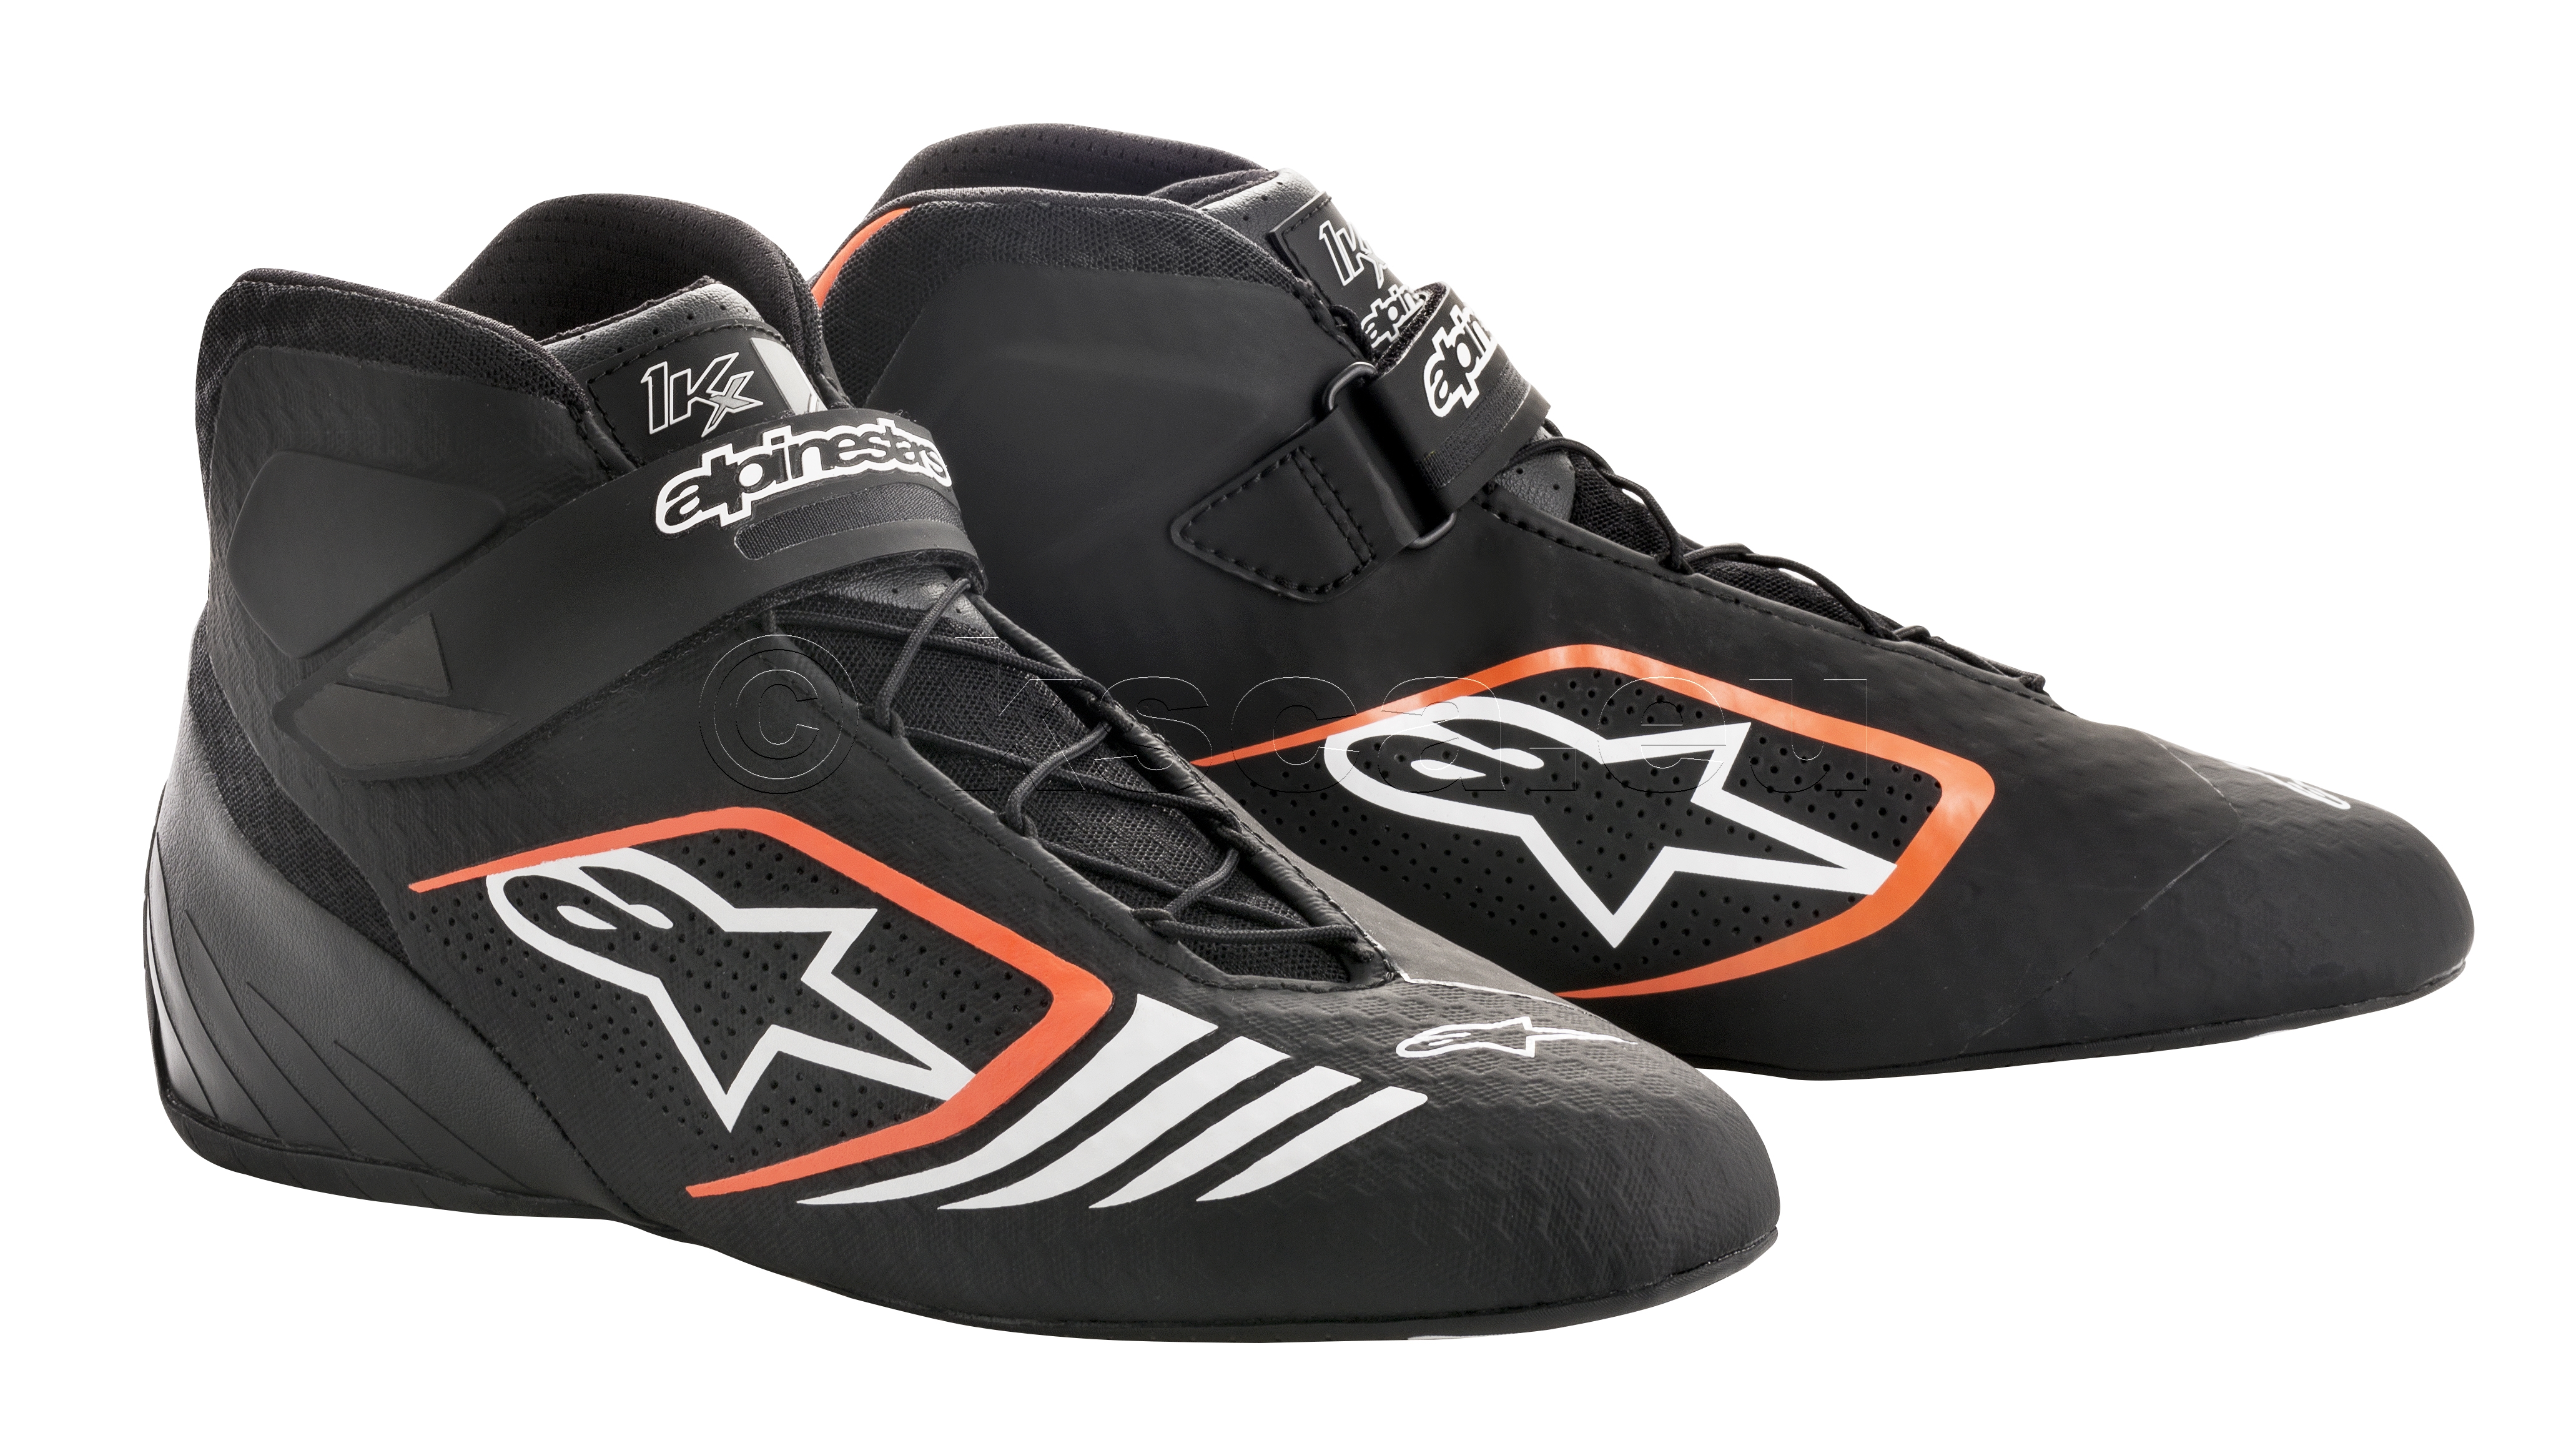 Picture of 2021 Tech-1 KX shoes black/orange Fl.